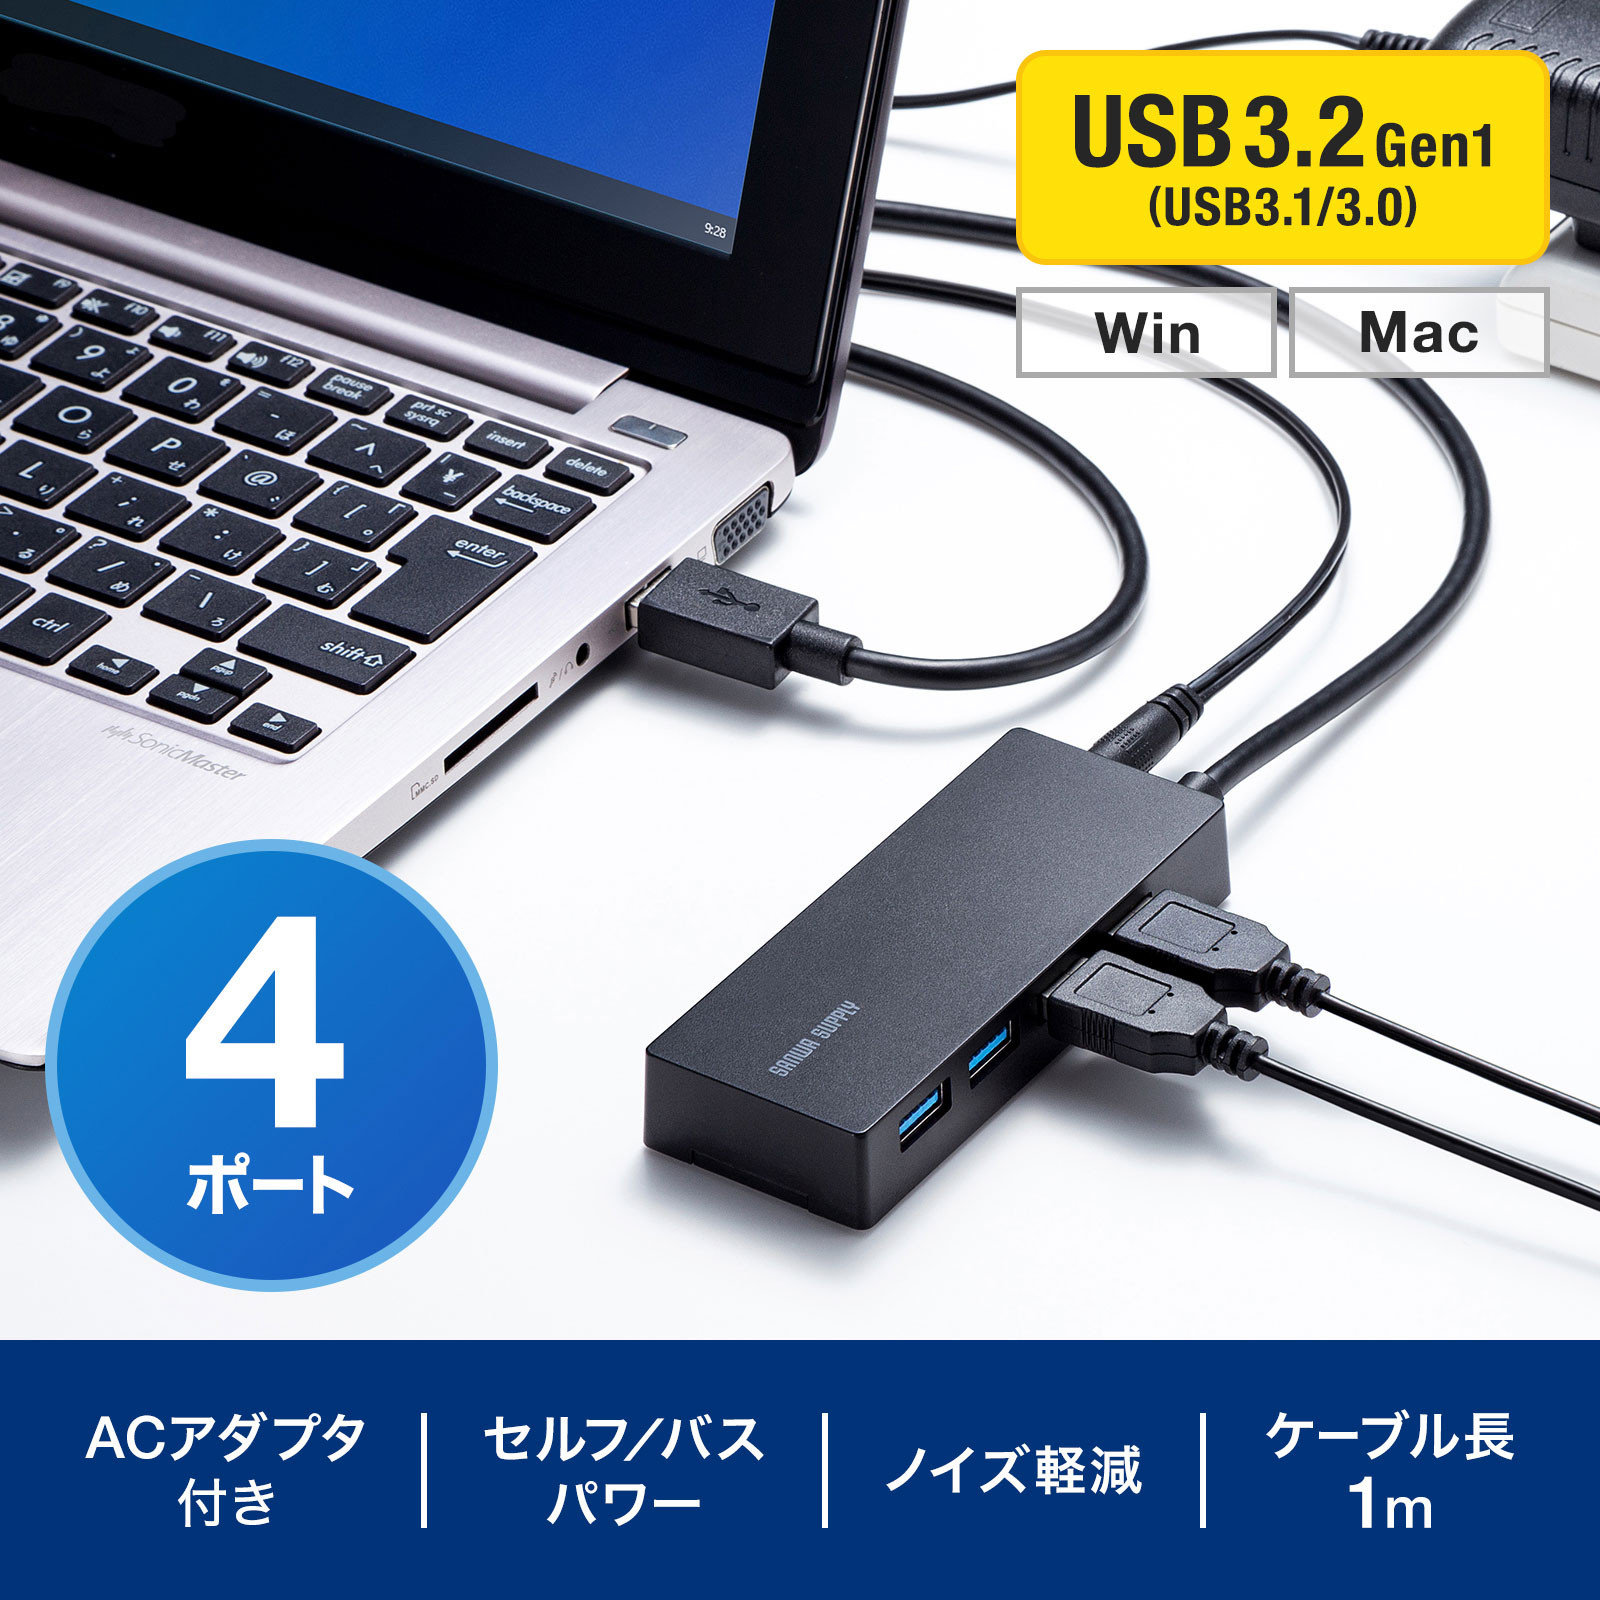 新しい サンワサプライ USB3.1 Gen1 USB2.0コンボハブ 4ポート バスパワー ブラック USB-3H421BK 